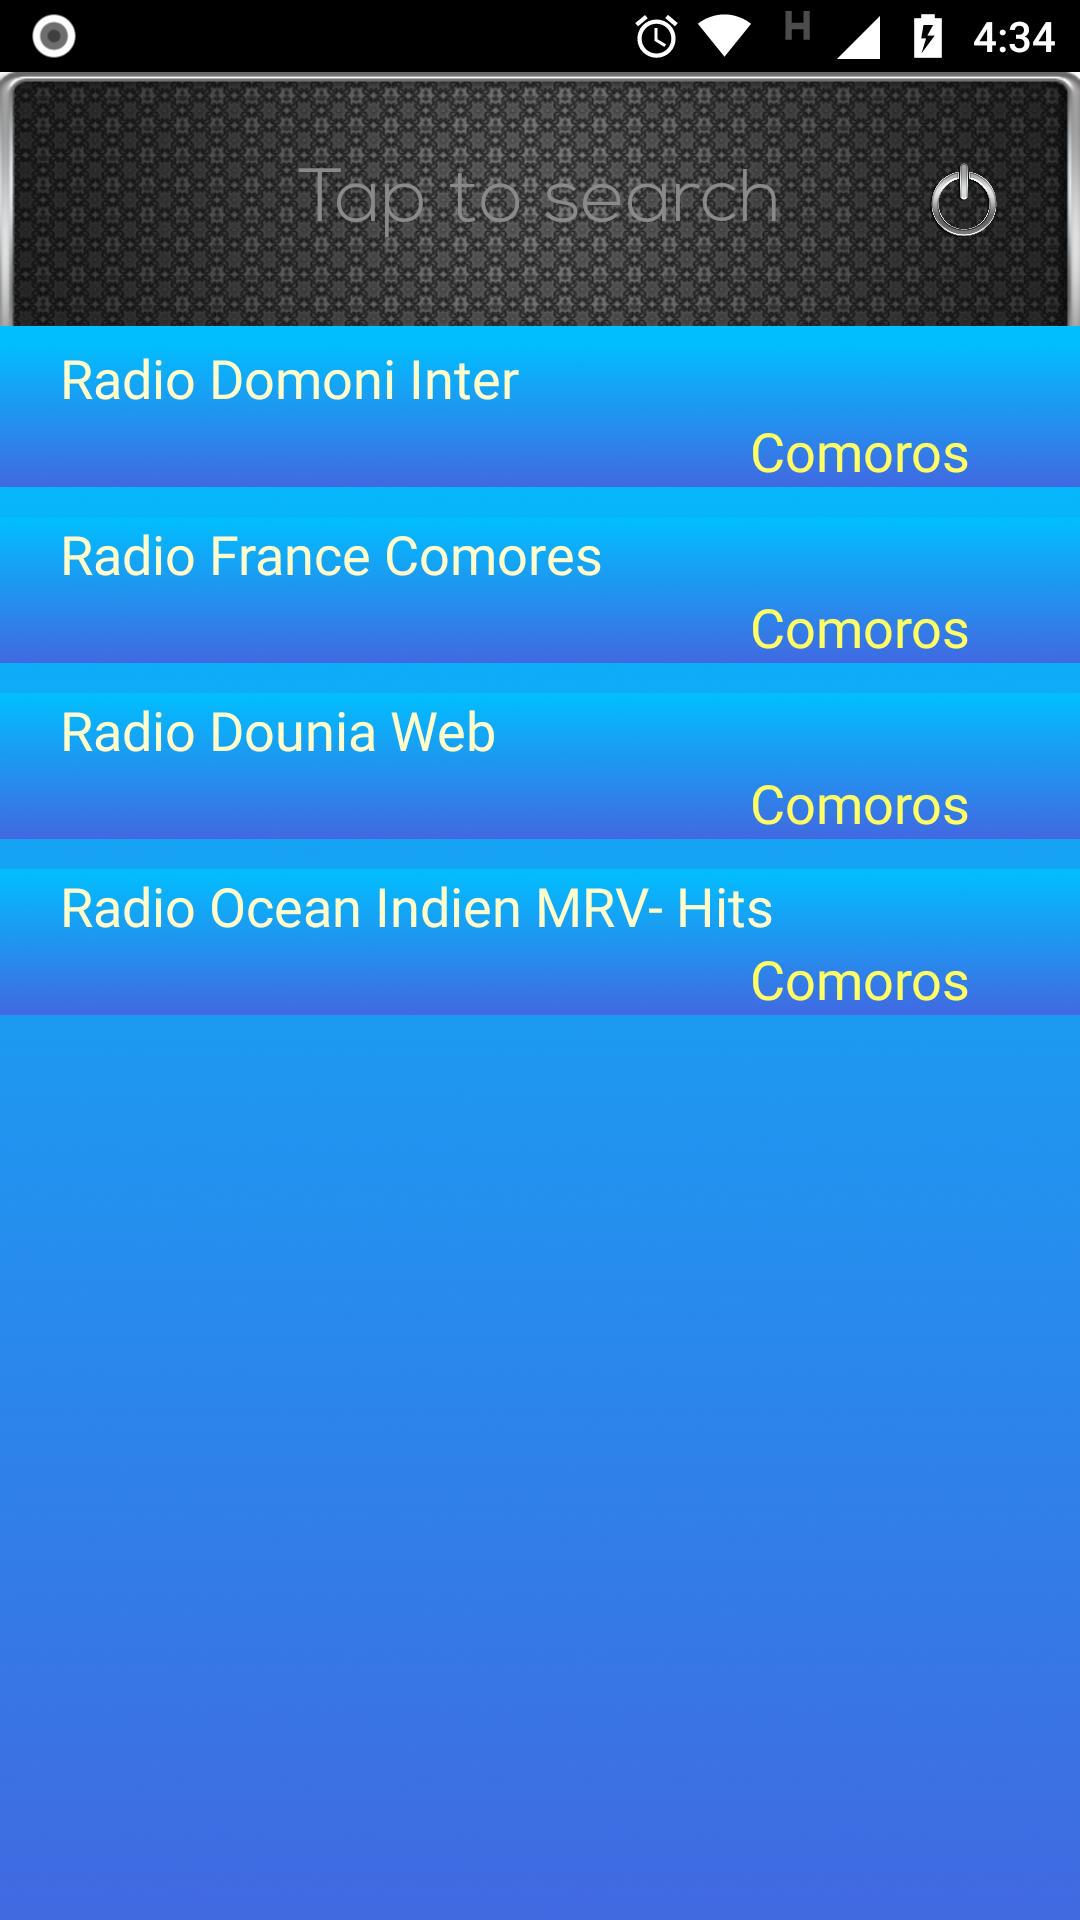 Radio FM Comoros APK pour Android Télécharger